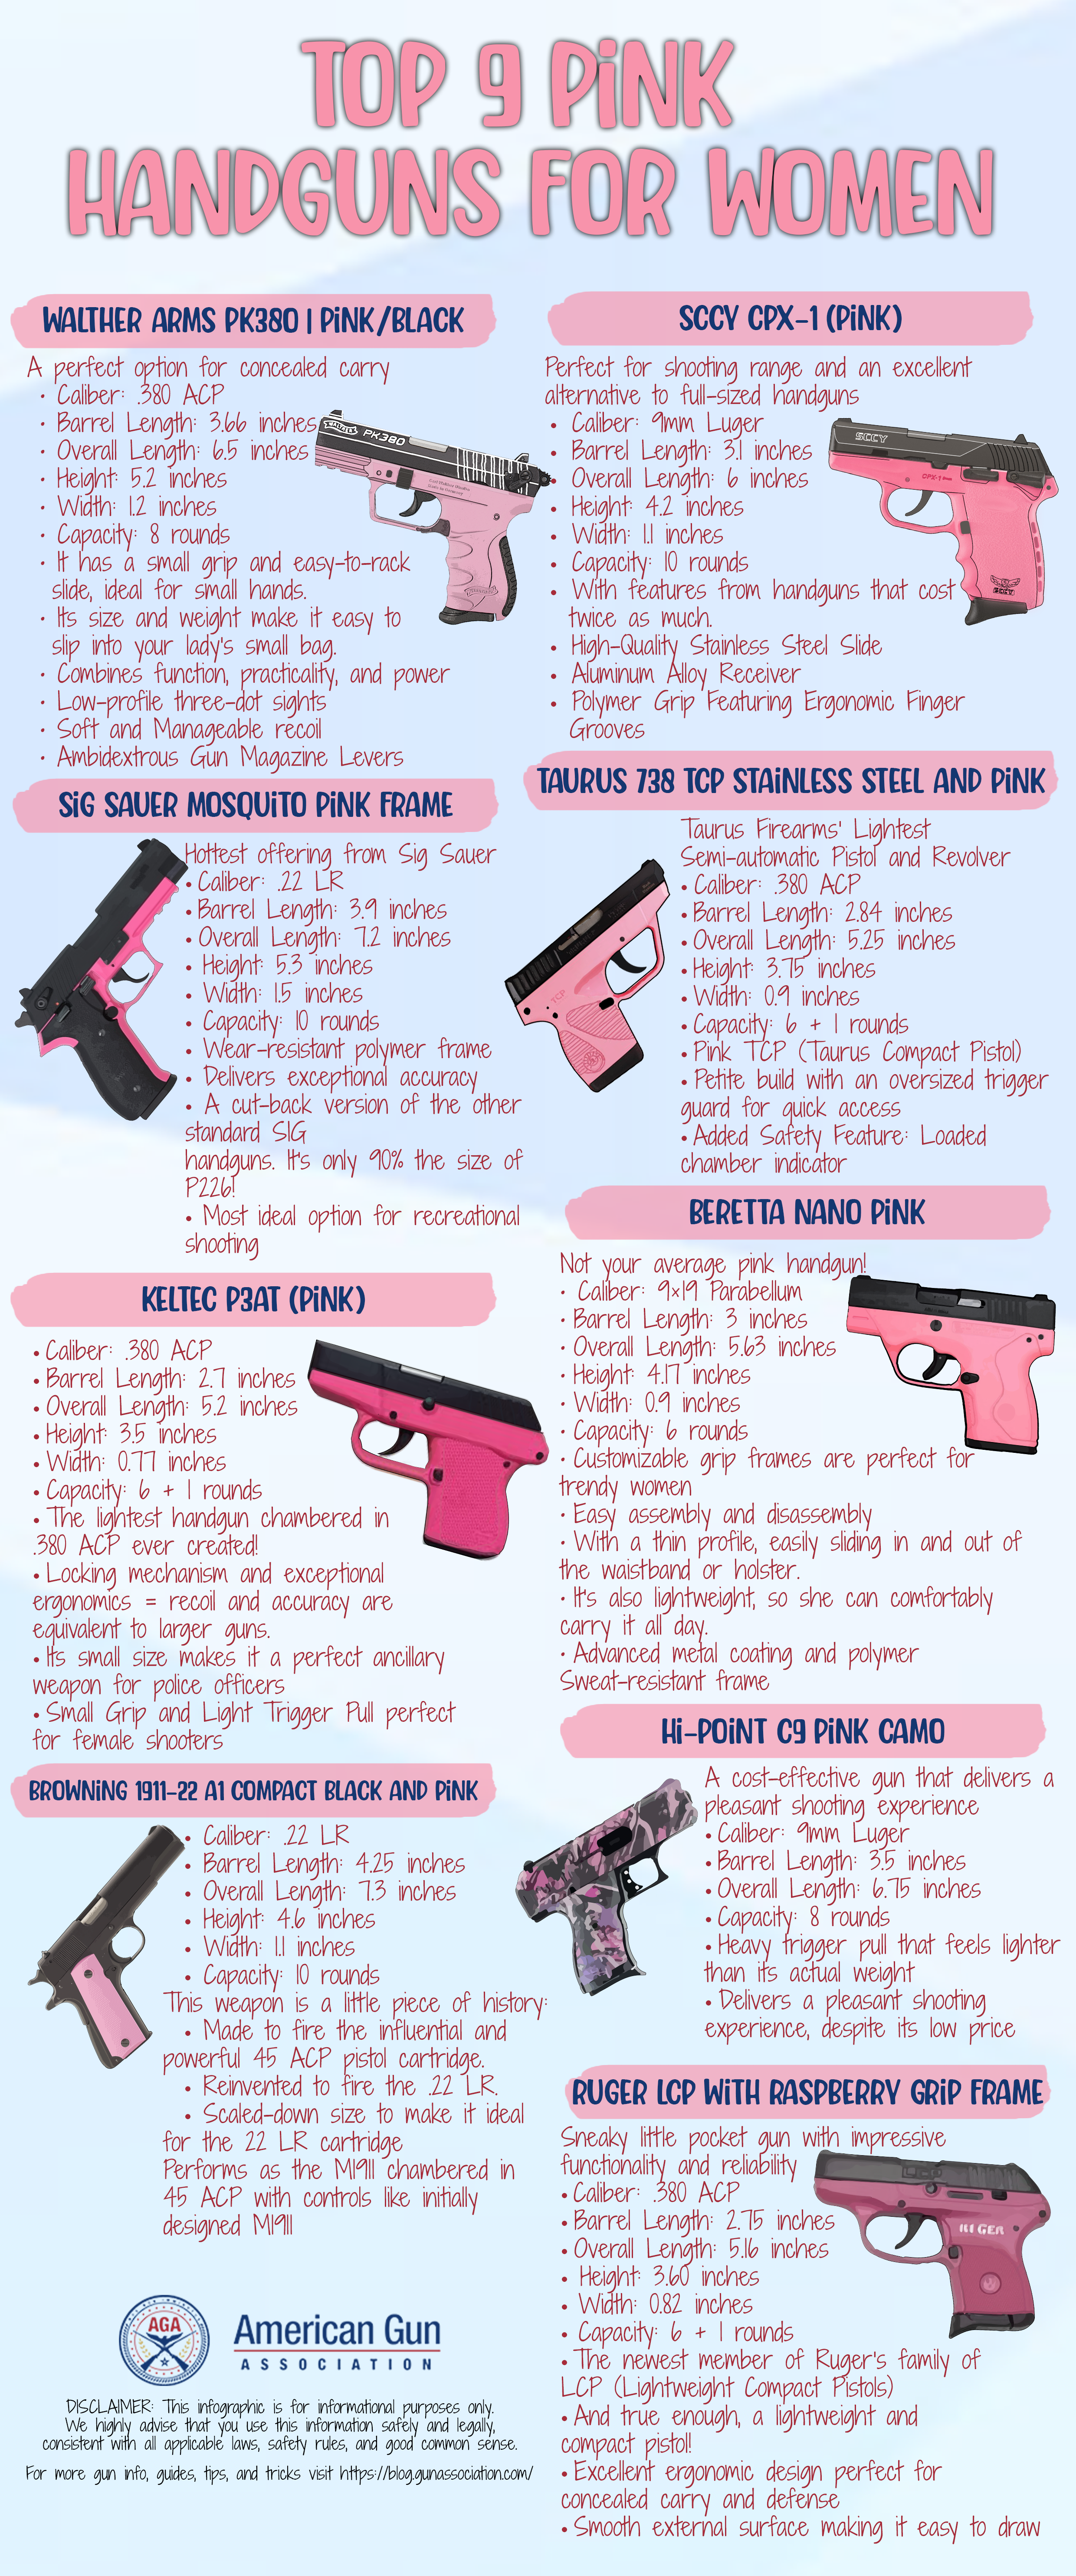  Top 9 Pink Handguns for Women